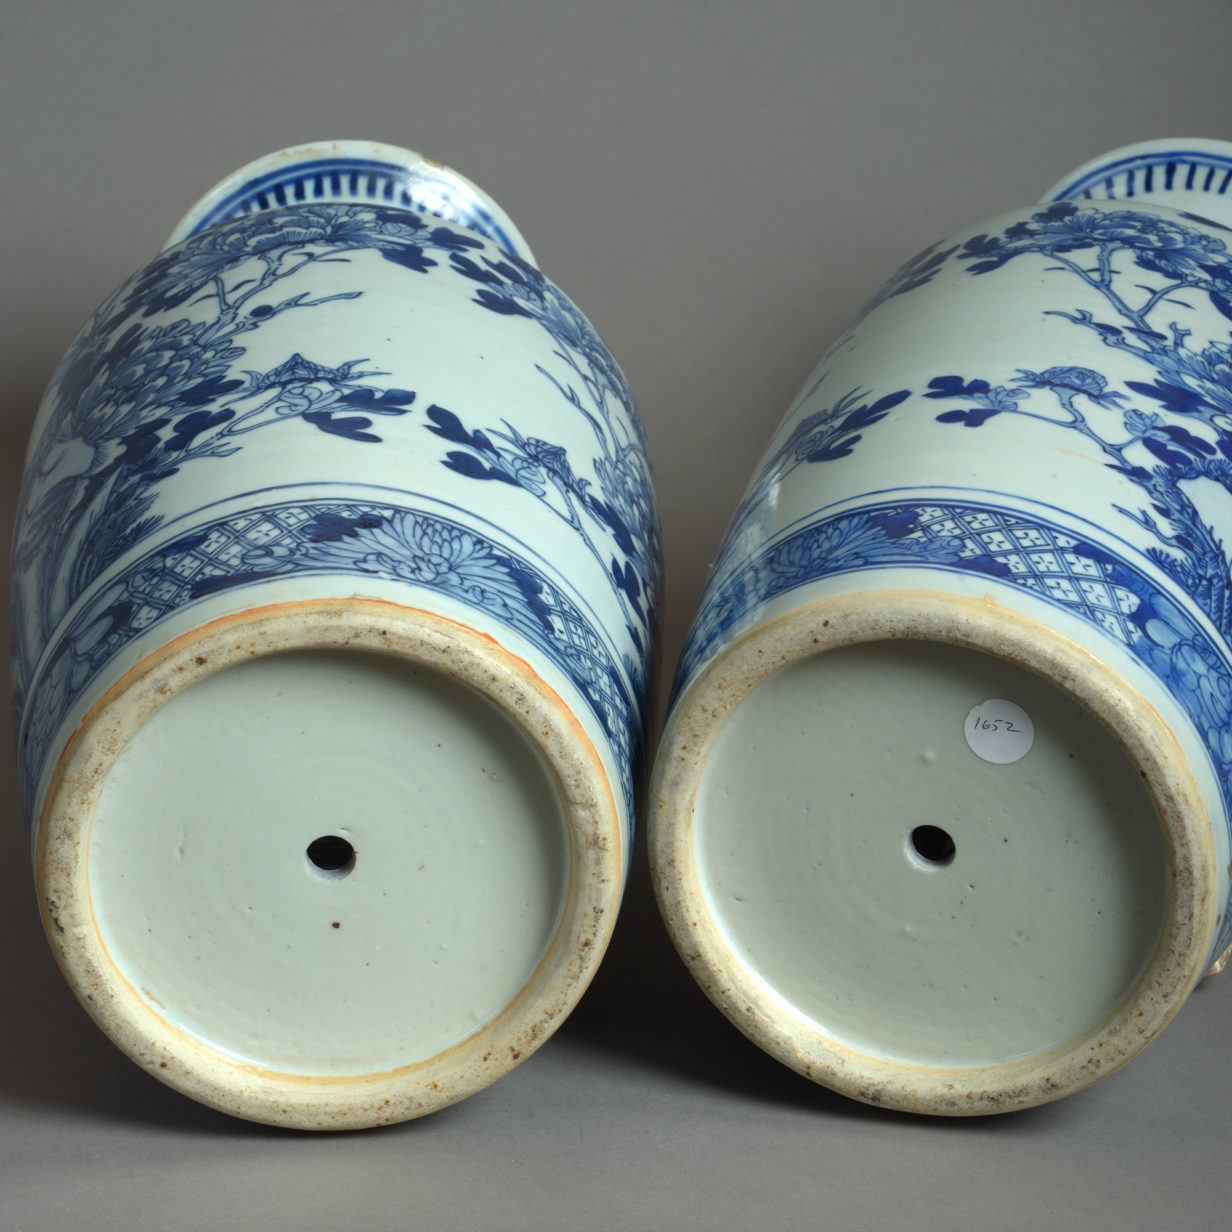 19th century pair of blue & white porcelain vases